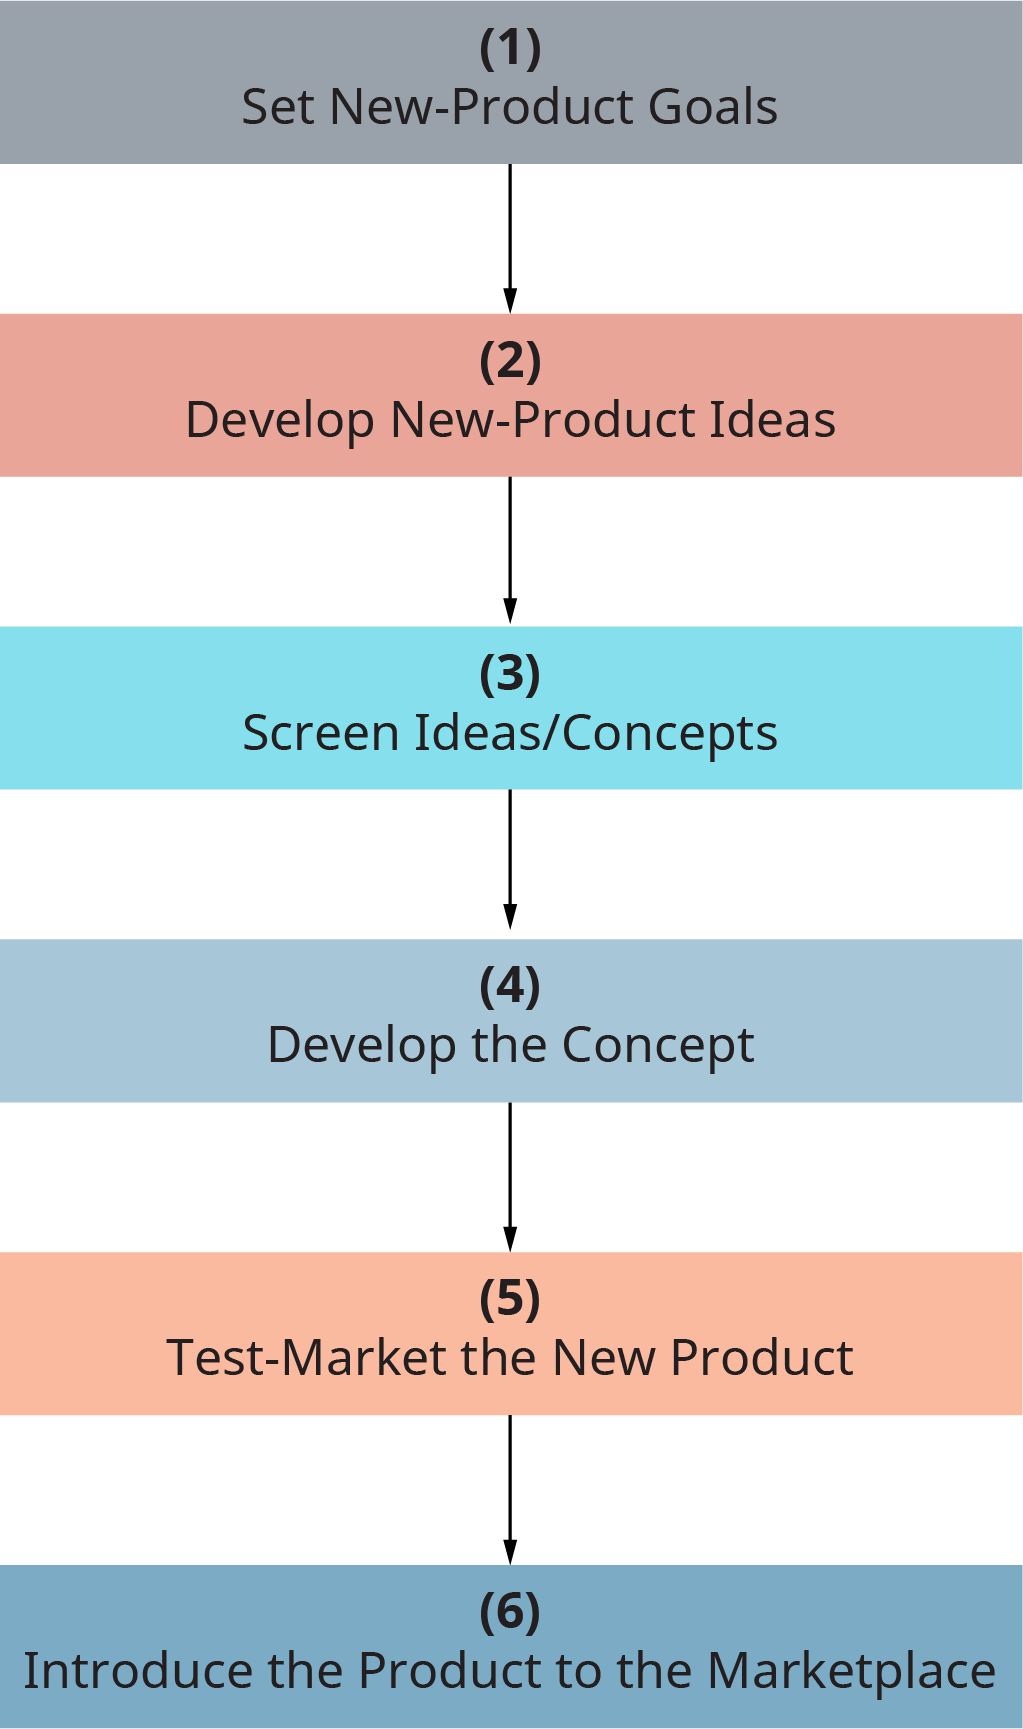 Cada etapa flui para a próxima. Etapa 1, defina novas metas de produto. Etapa 2, desenvolver novas ideias de produtos. Etapa 3, As ideias da tela reduzem os conceitos. Etapa 4, desenvolva o conceito. Etapa 5, teste o novo produto no mercado. Etapa 6, apresentar o produto ao mercado.